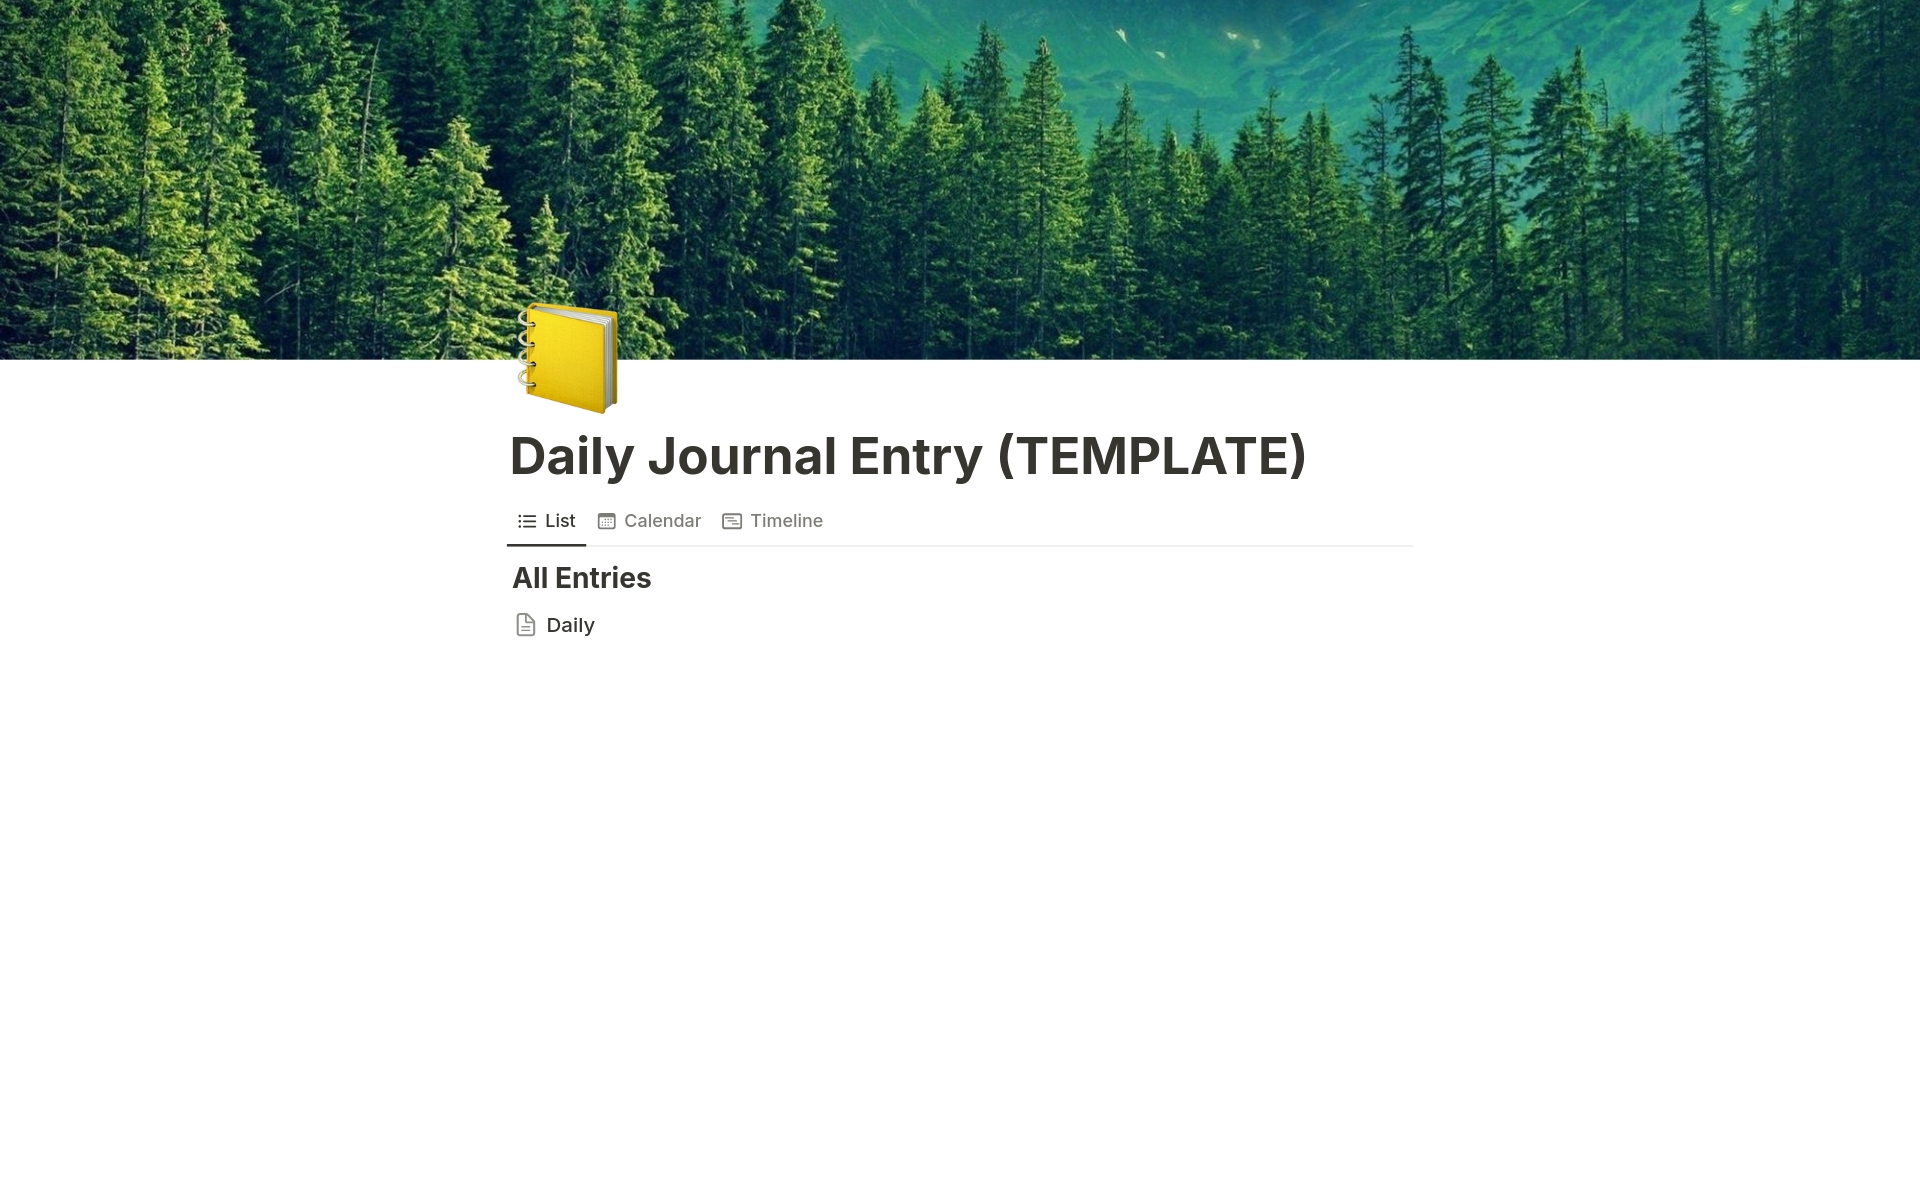 Aperçu du modèle de Daily Journal Entry